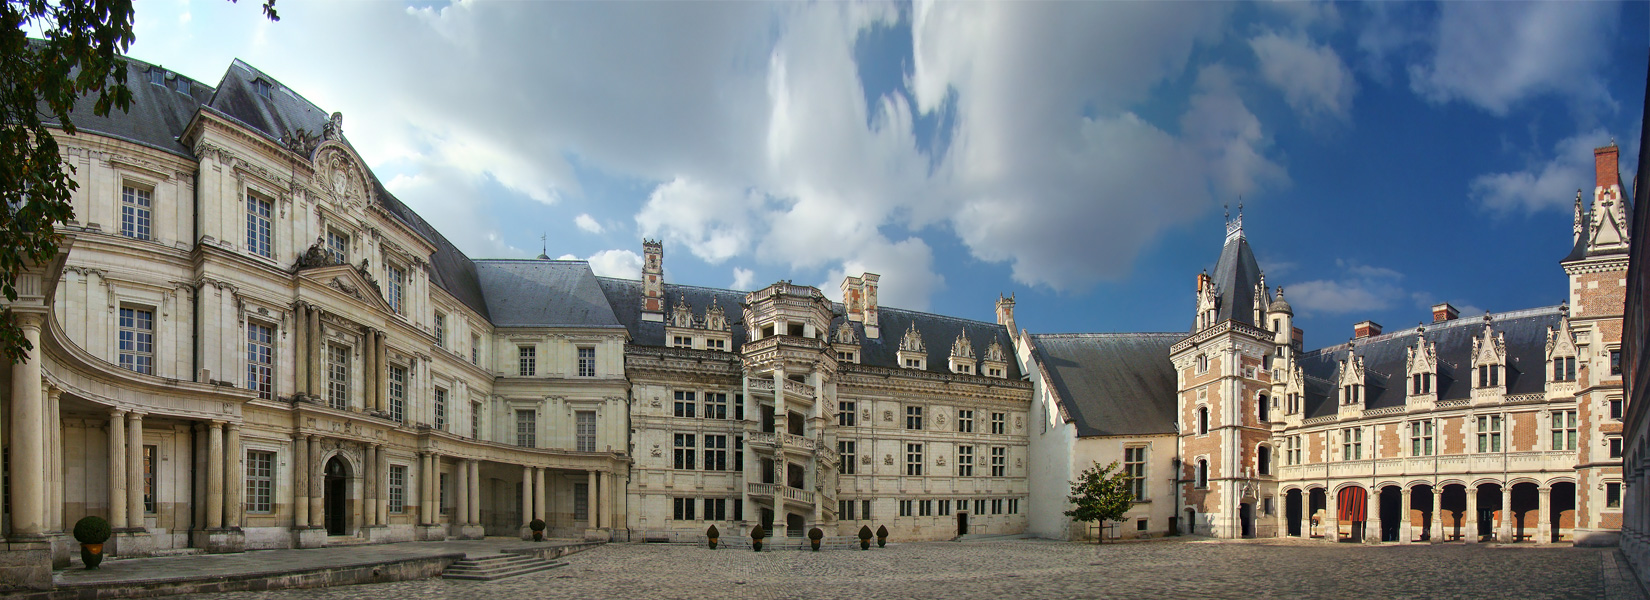 Замок Франциска I, королевский замок Блуа - самый крупный по размерам из замков Луары. Состоит под охраной ЮНЕСКО как памятник Всемирного наследия
